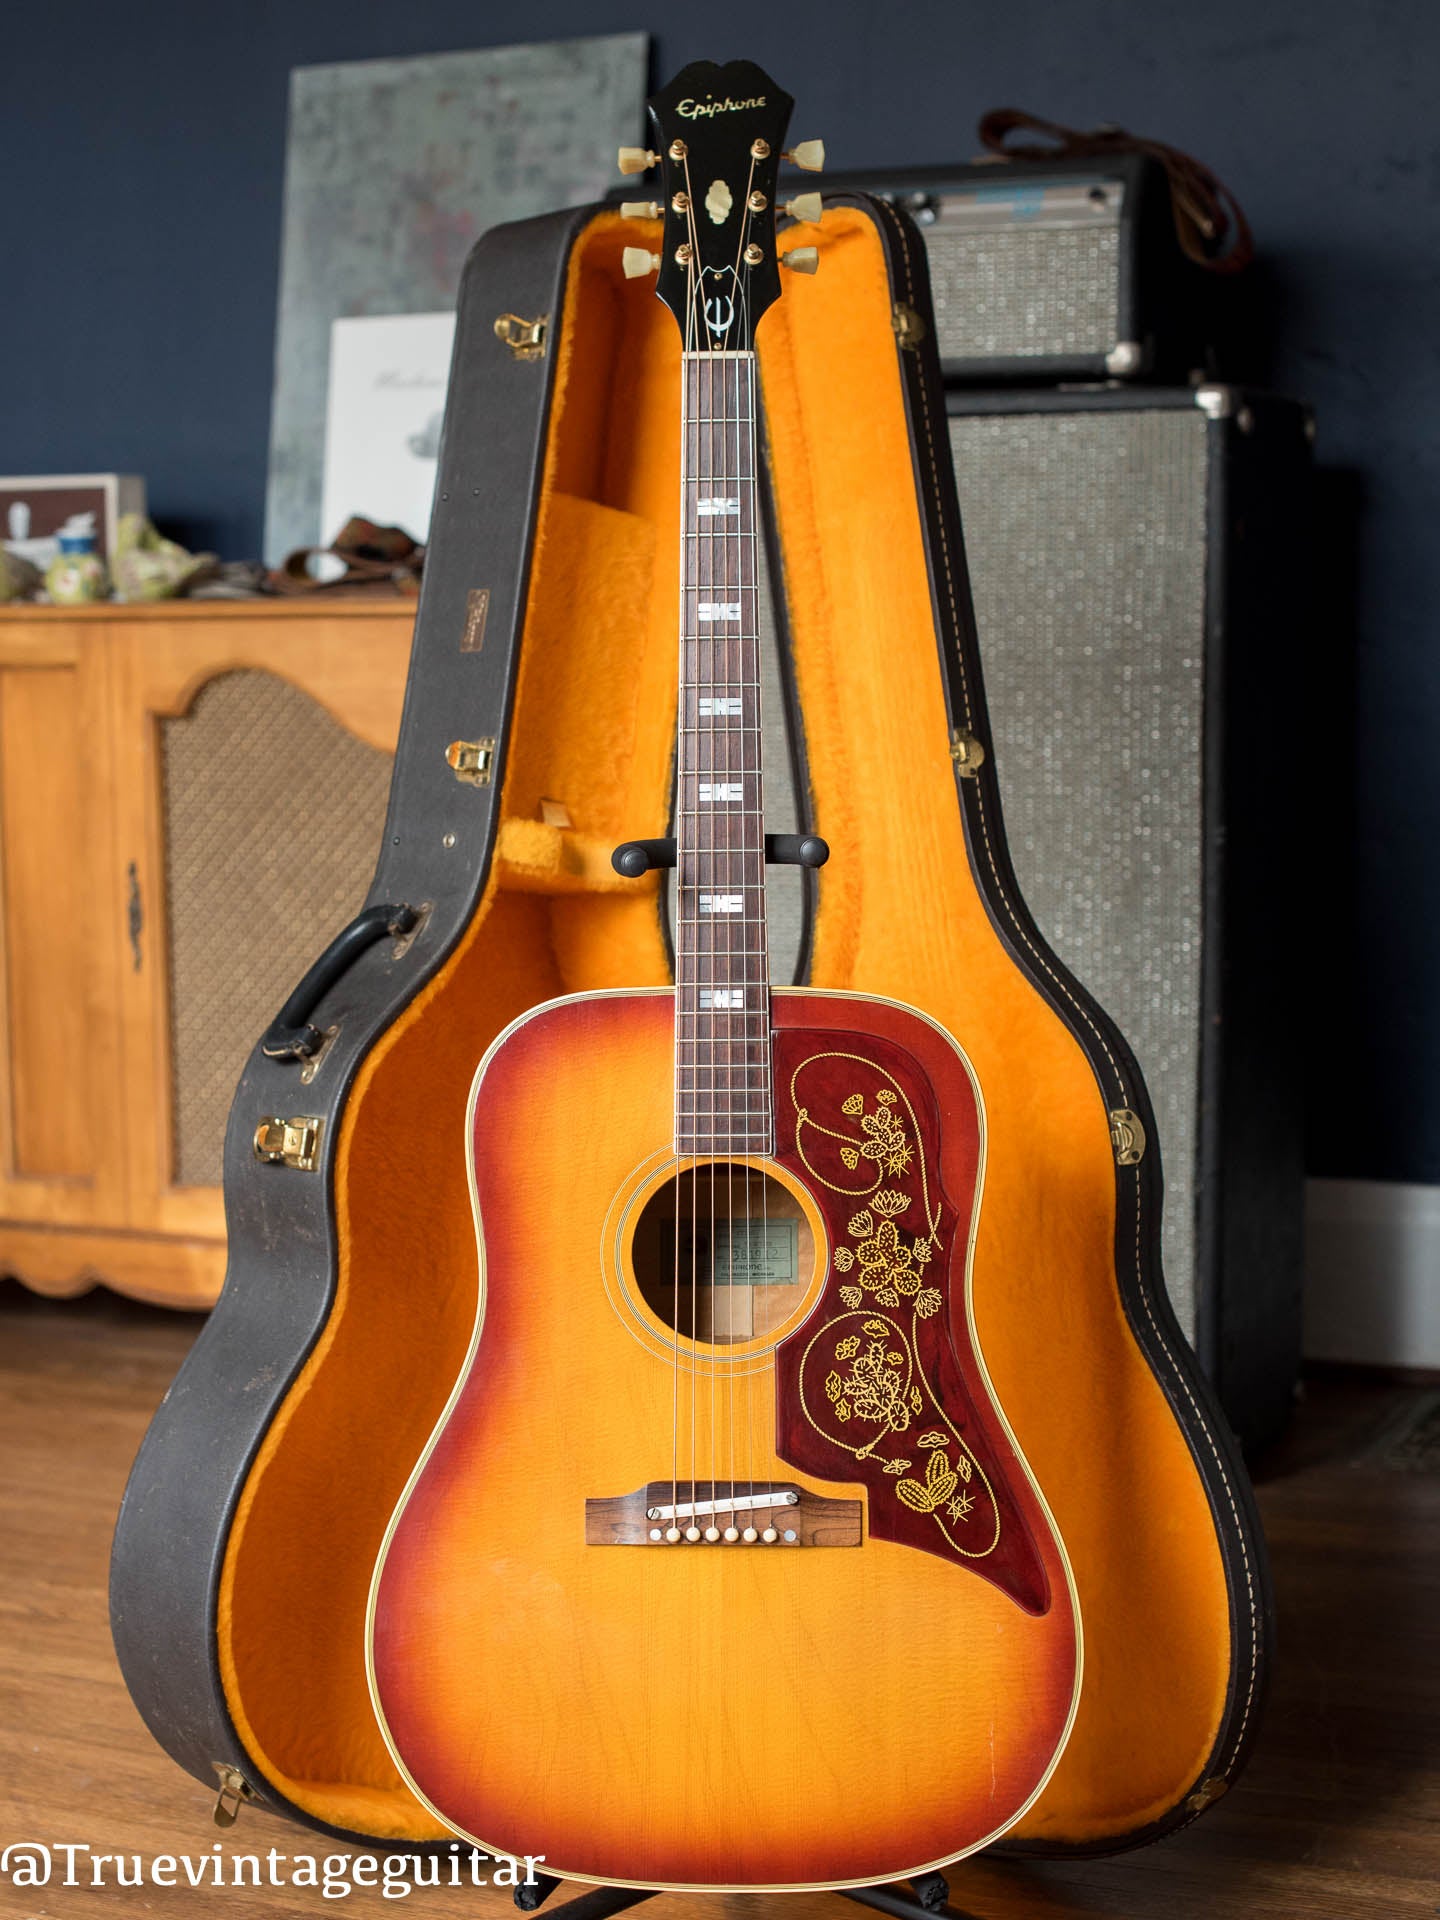 Vintage 1965 Epiphone FT-110 Frontier acoustic guitar